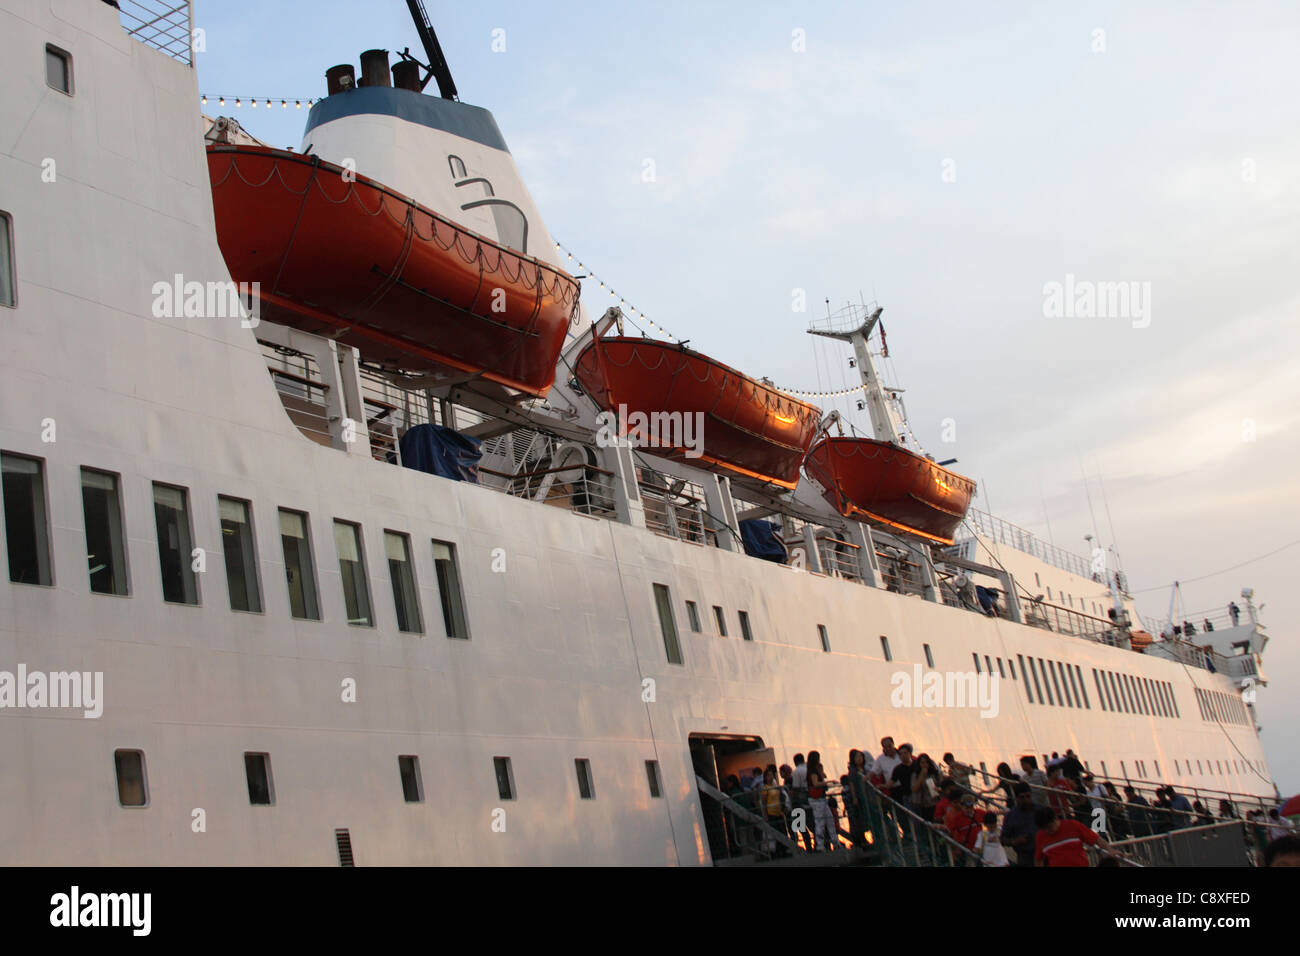 ship MV Logos Hope at Port Klang, Malaysia Stock Photo